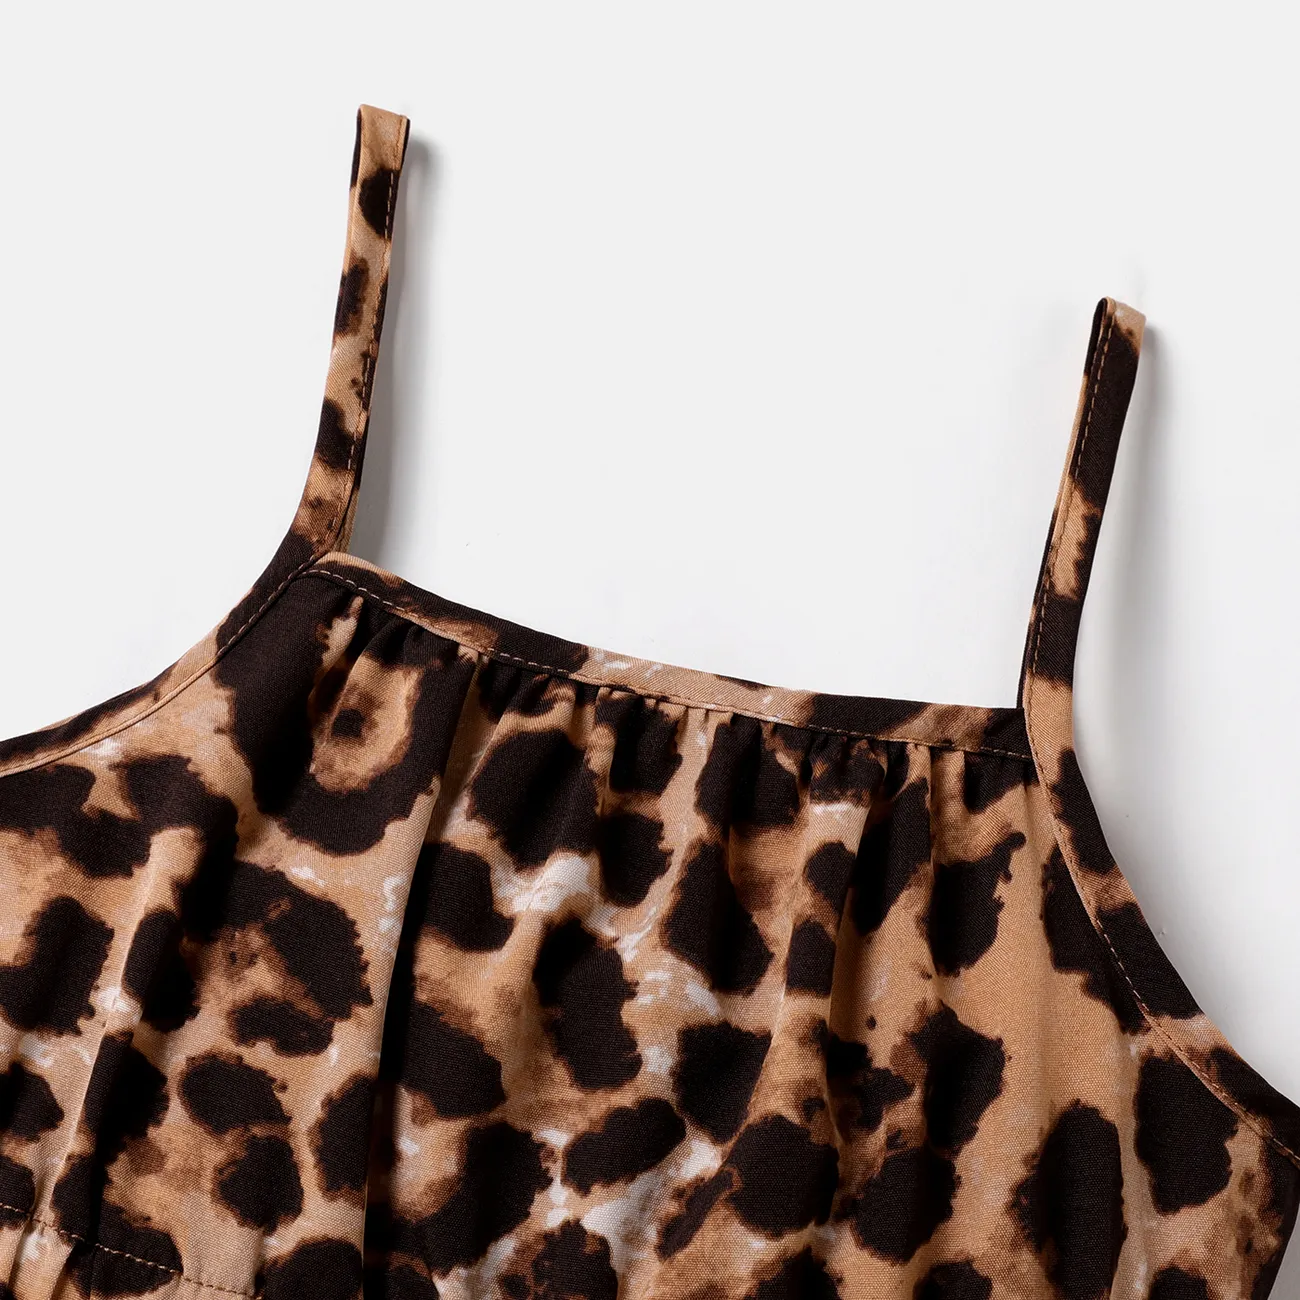 Kleinkinder Mädchen Tanktop Avantgardistisch Leopardenmuster Baby-Overalls braun big image 1